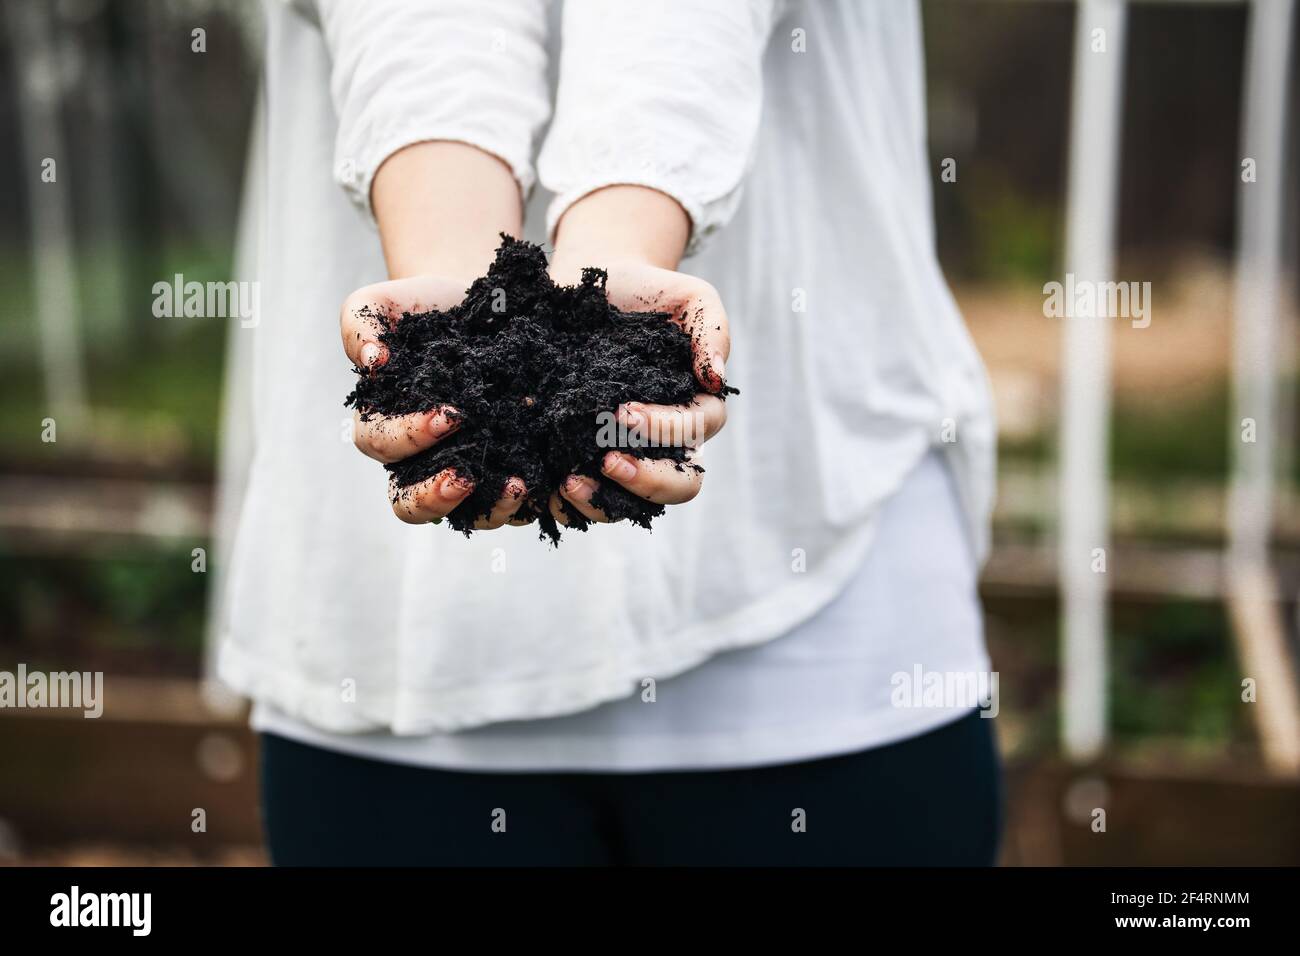 Die Hände der jungen Frau halten frischen Kompost mit verschwommenen Hochbetten in einem Garten. Stockfoto